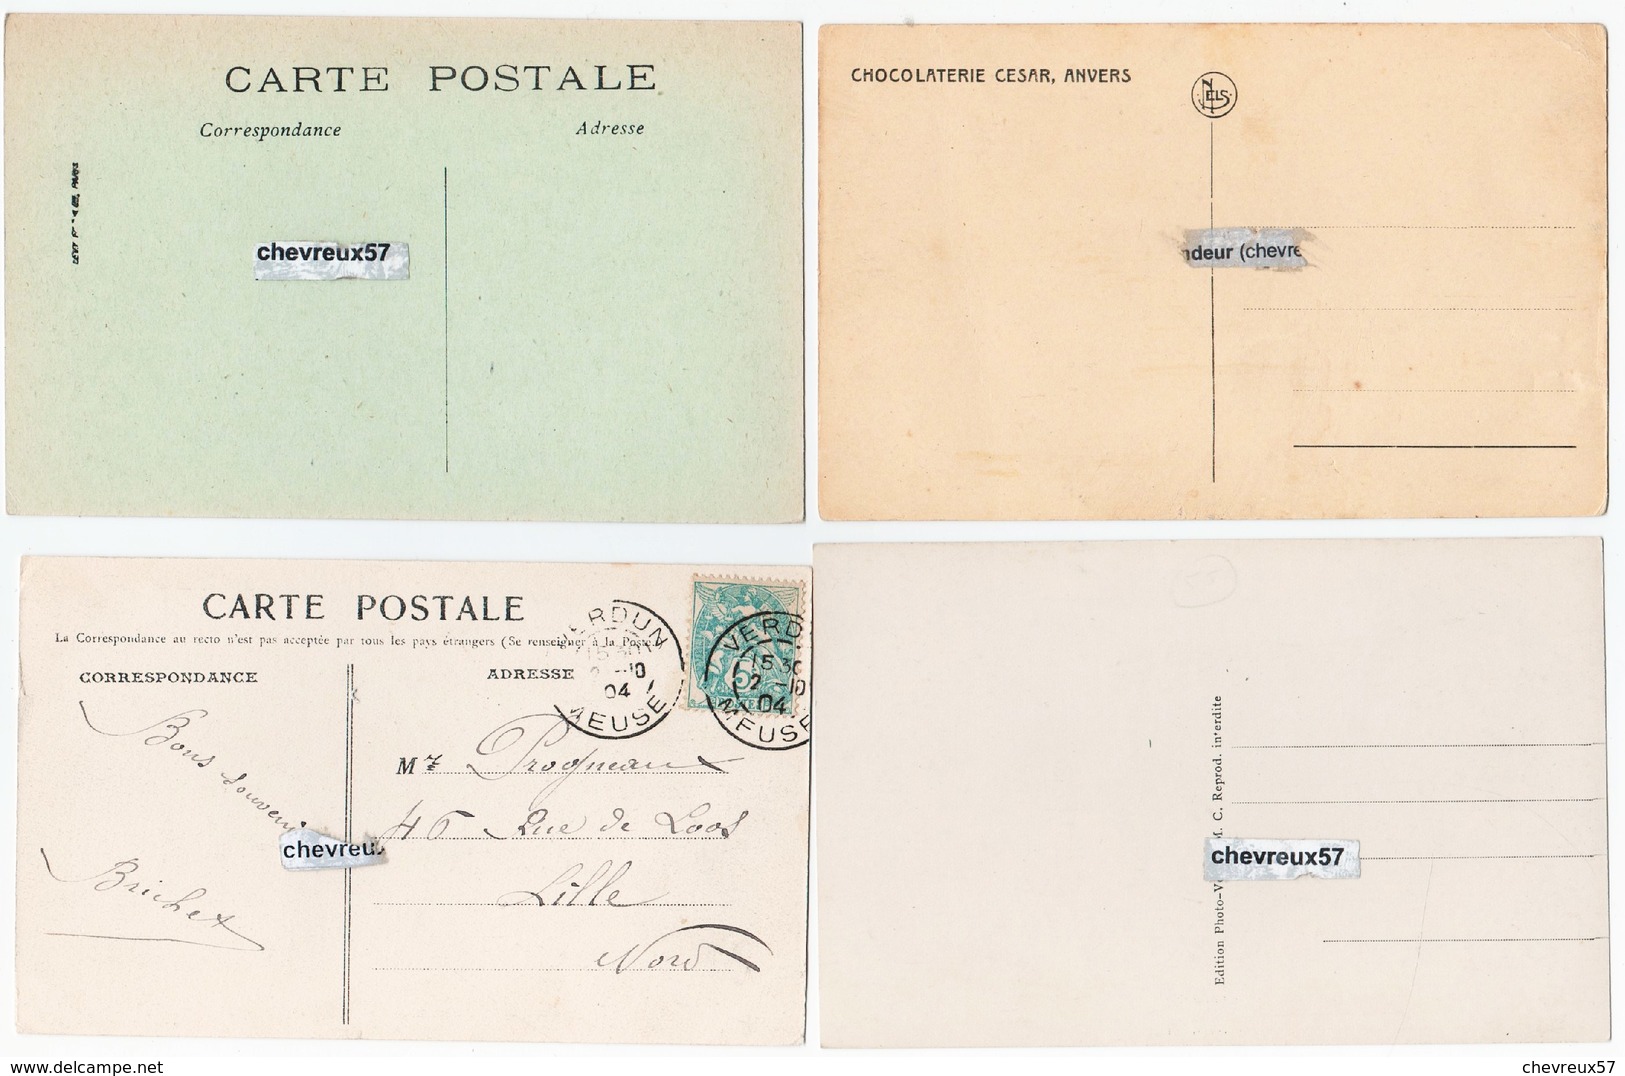 61 - VILLES ET VILLAGES DE FRANCE - 32 cartes anciennes dont 12 cpa Lagny-Thorigny,10 cpa Verdun avant 1914